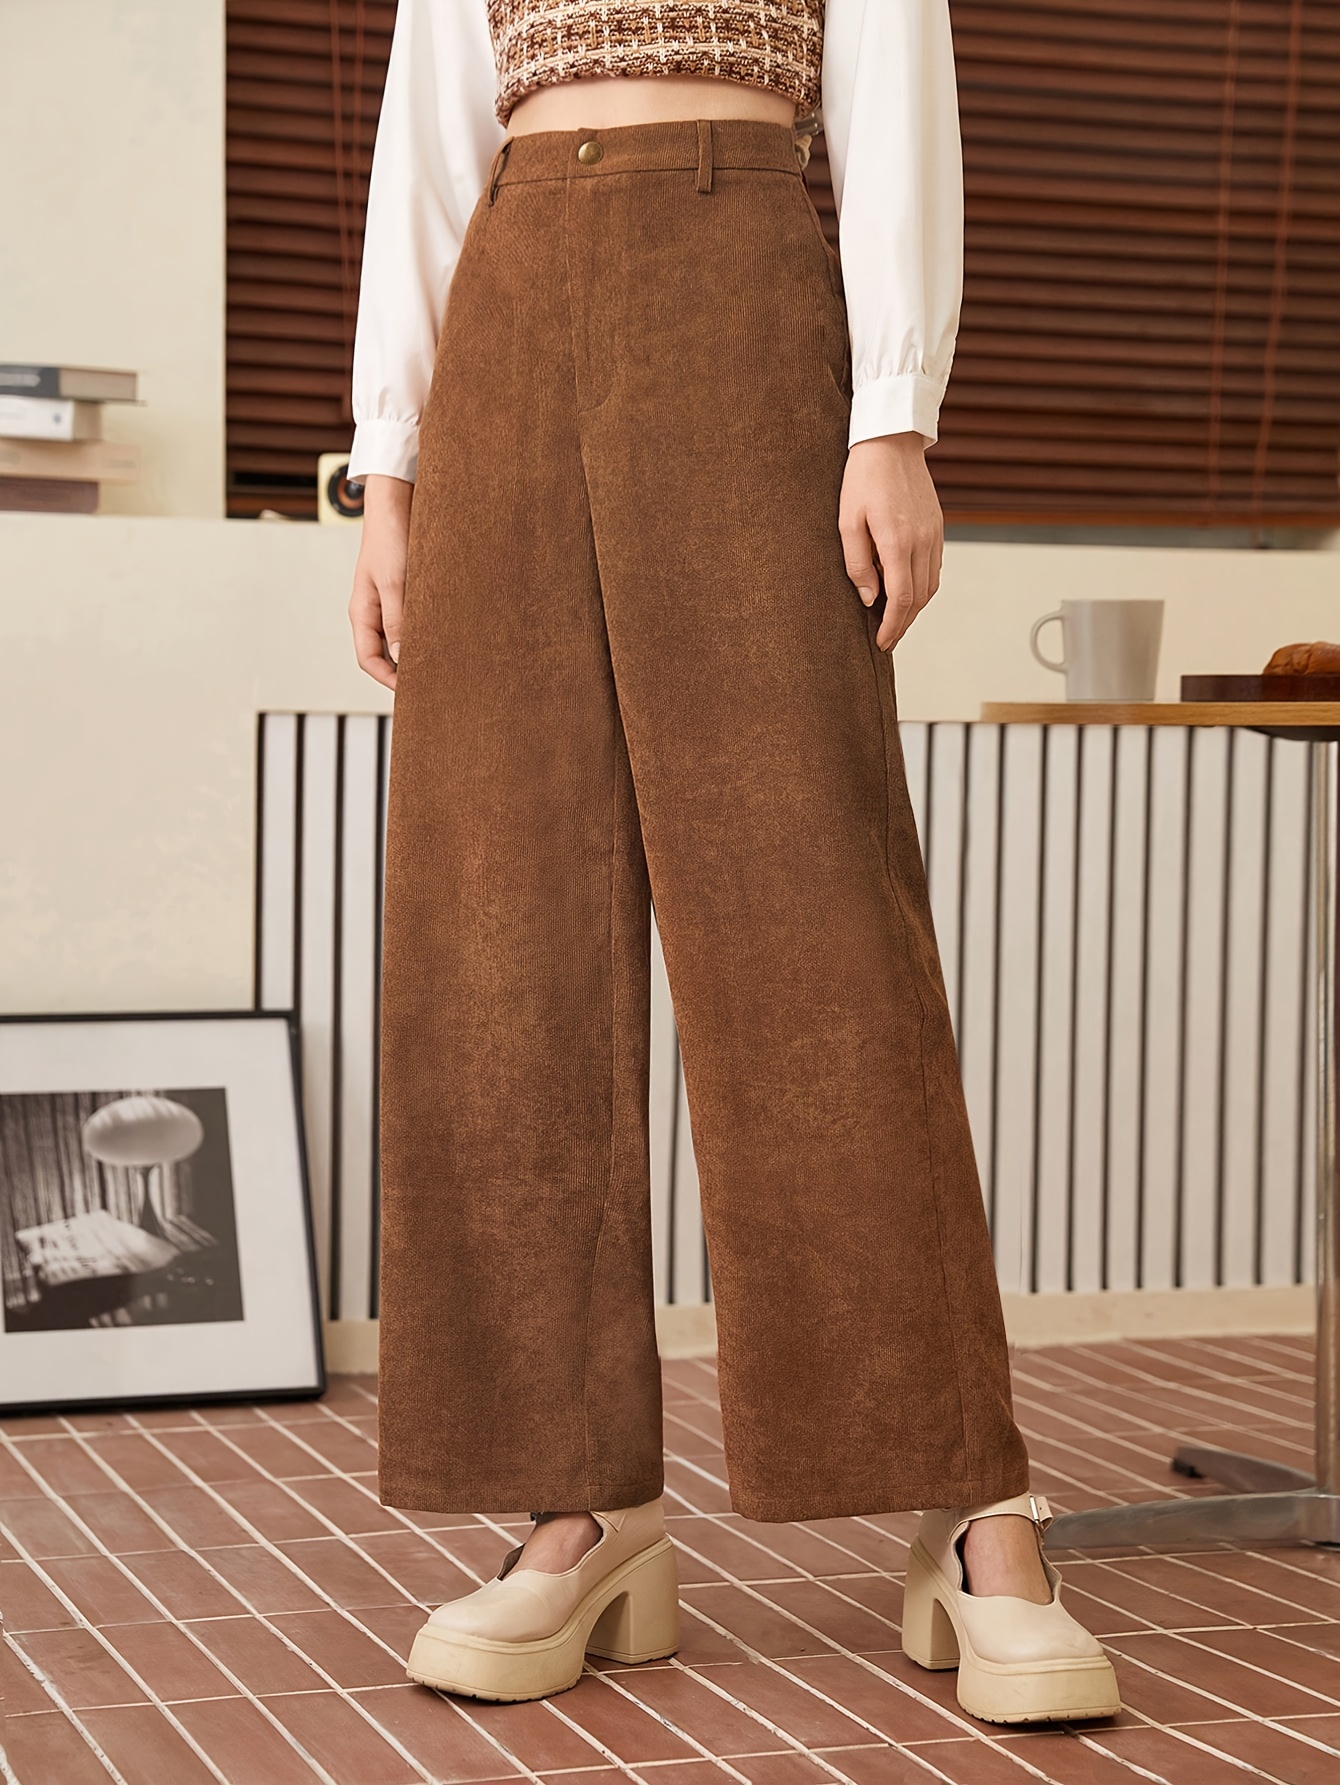 Pantalones sólidos con lazo, elegantes pantalones de cintura alta y largo  ajustados, ropa de mujer